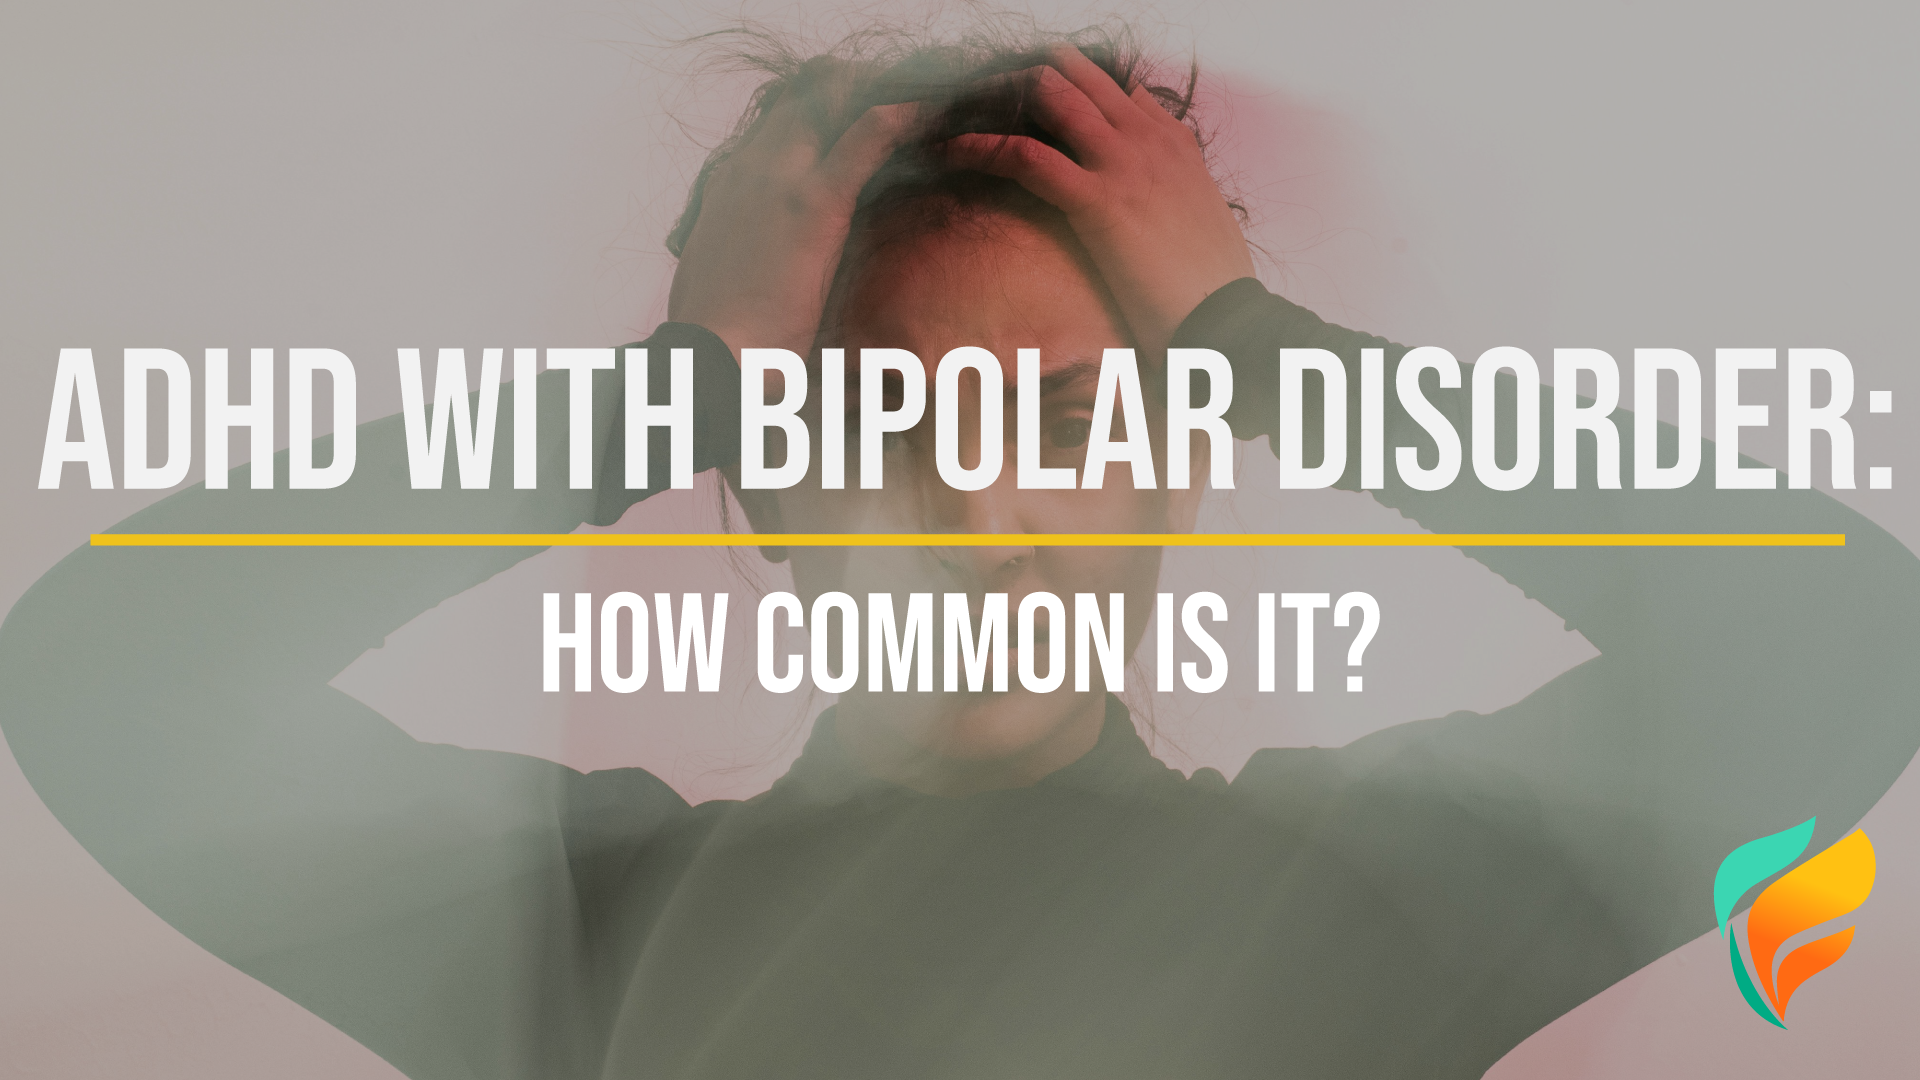 ADHD with Bipolar Disorder